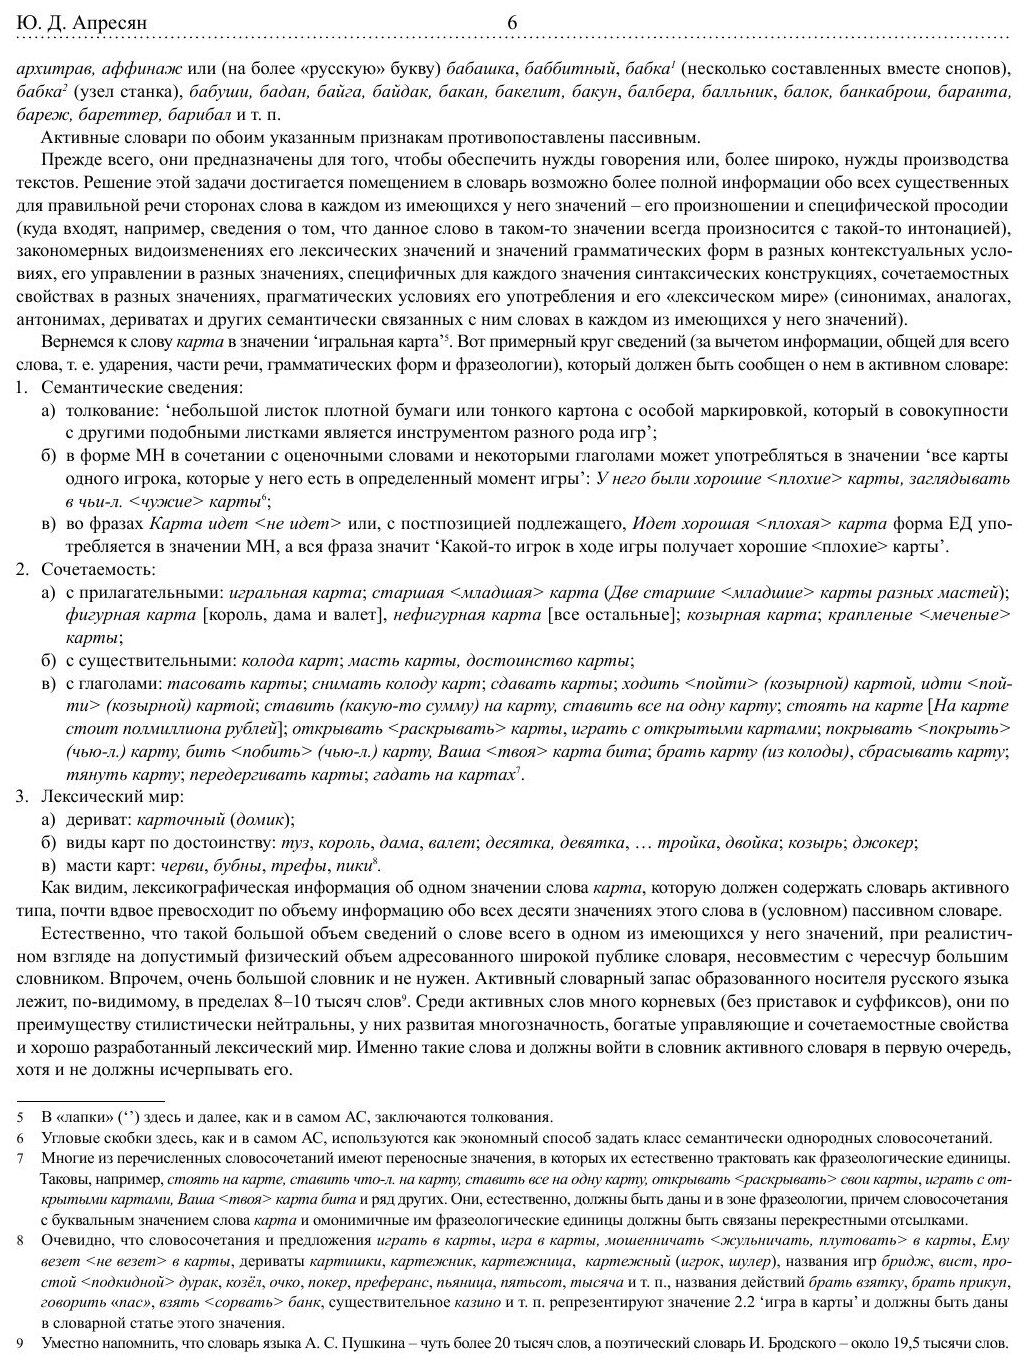 Активный словарь русского языка. Том 1. А-Б - фото №6